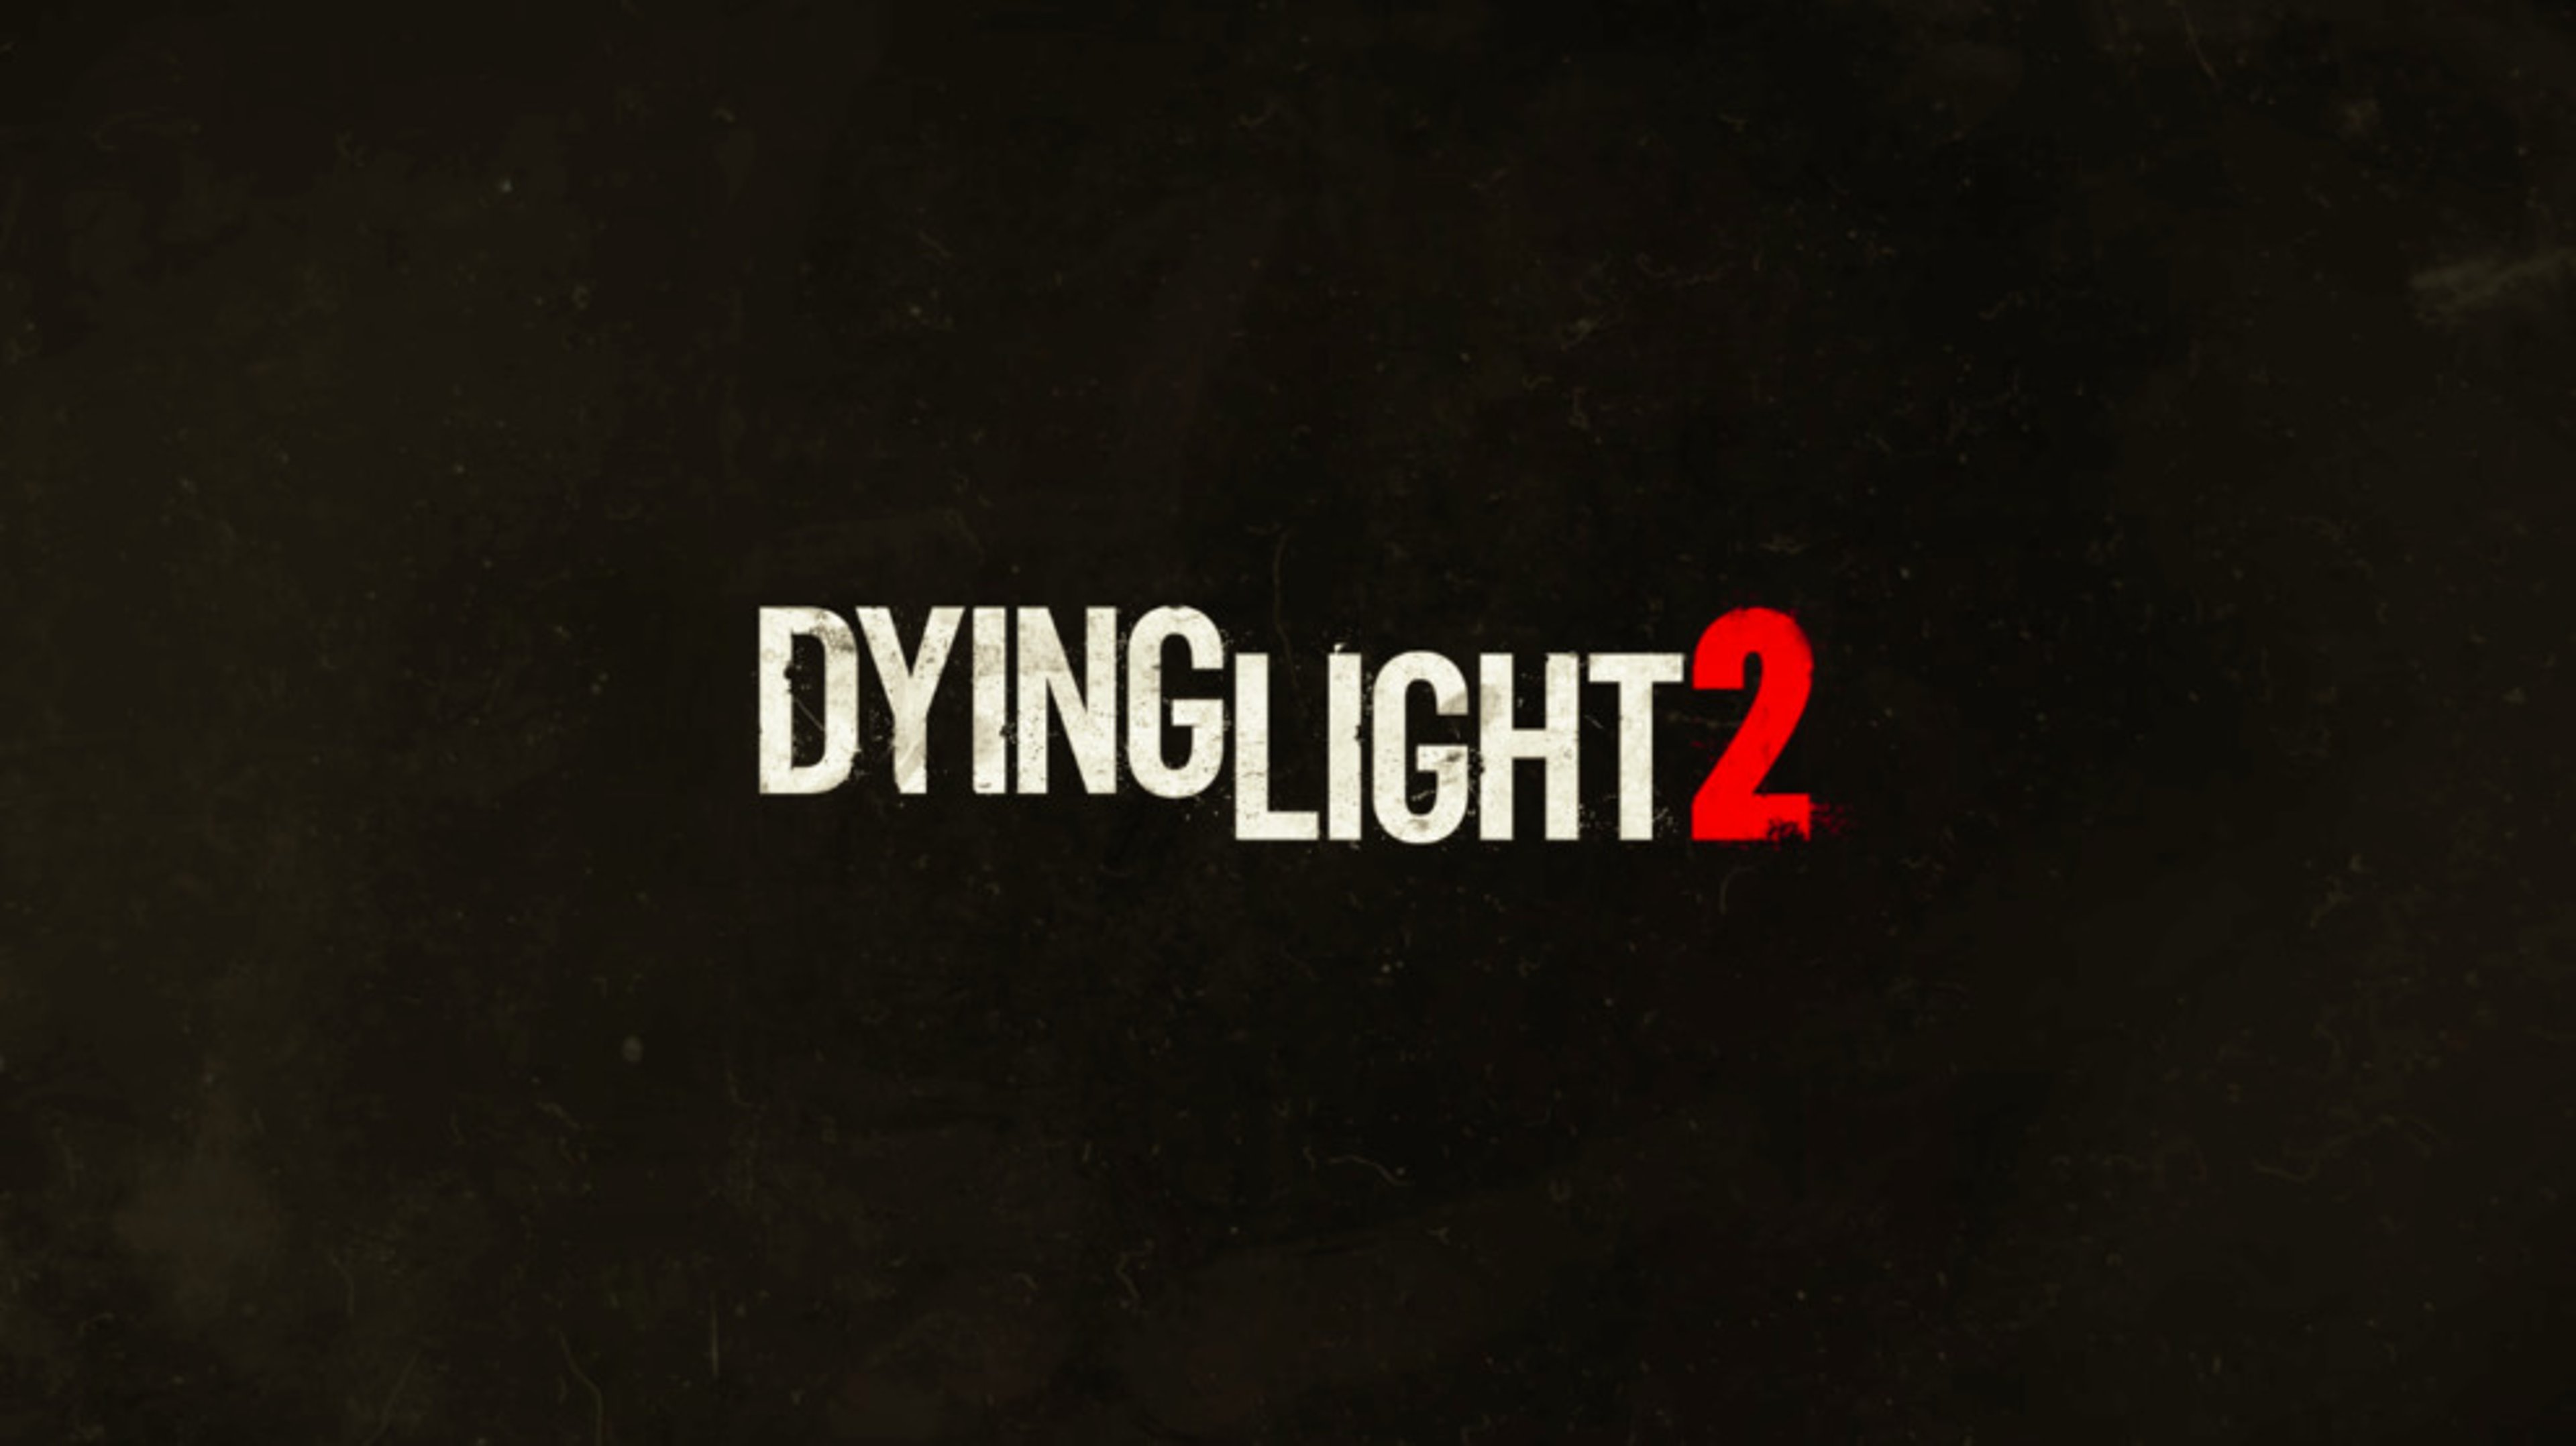 Dying light 2 annunciato ufficialmente